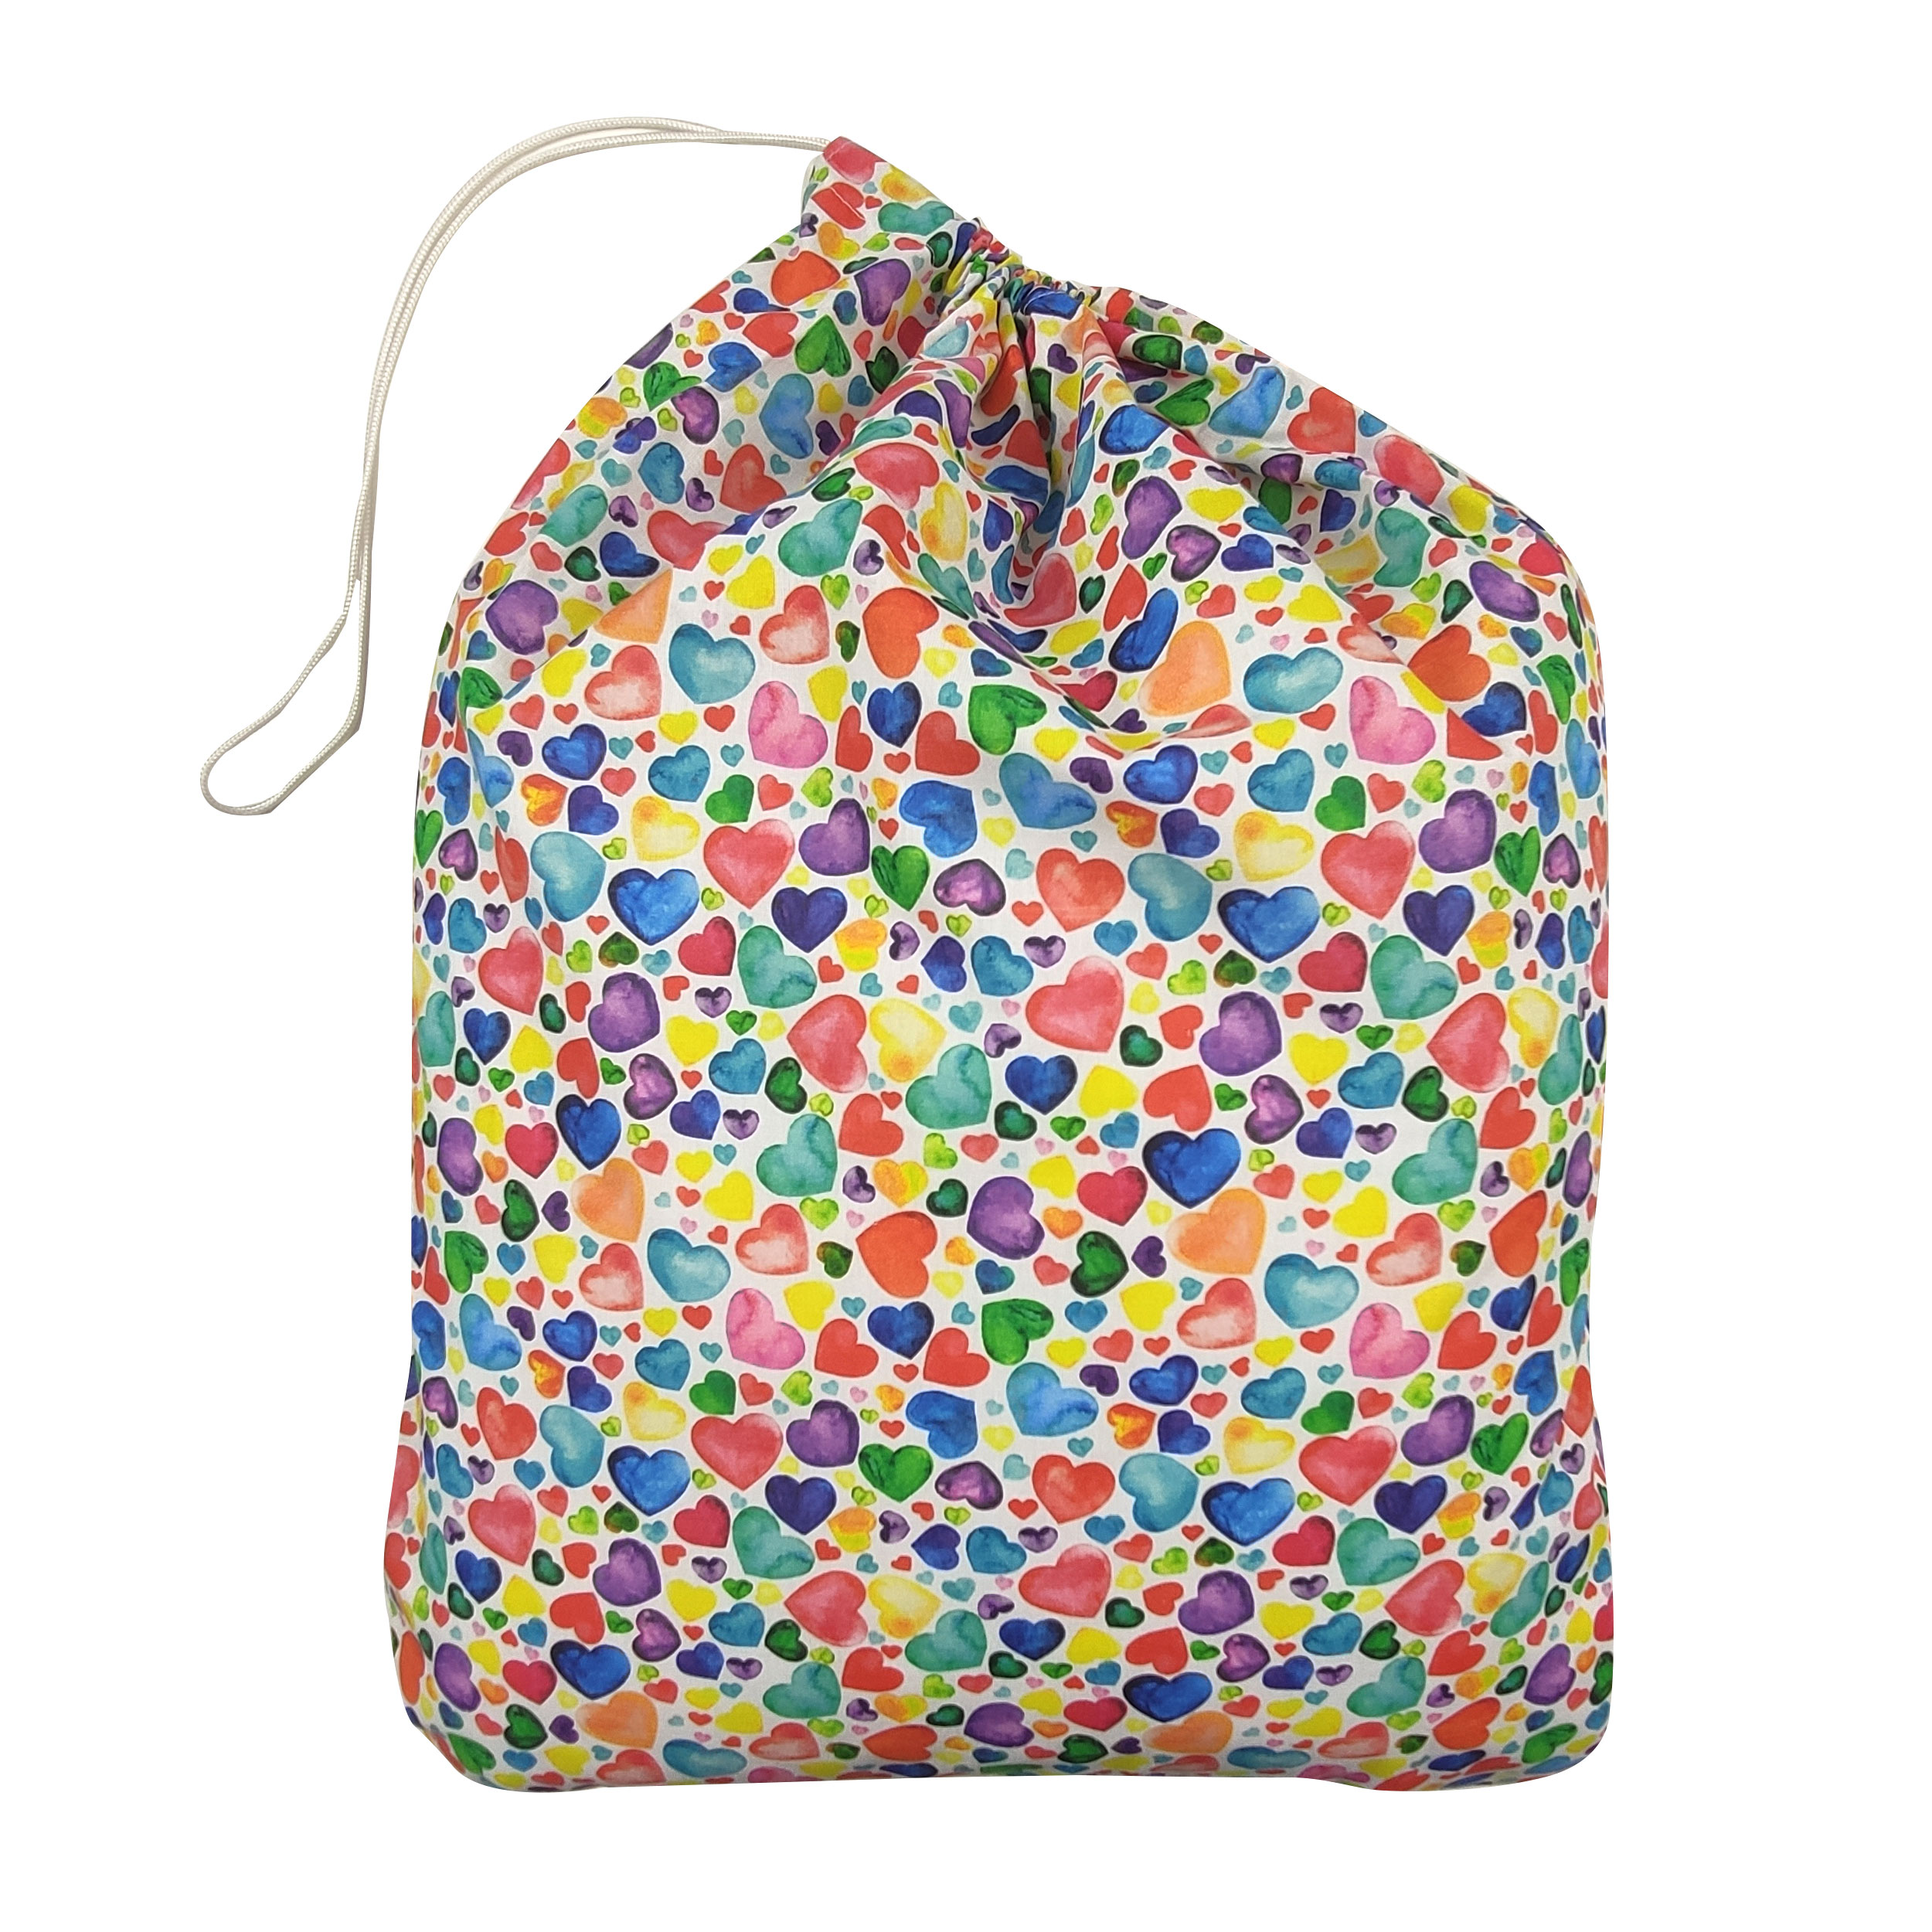 sacchetto asilo con cuoricini colorati